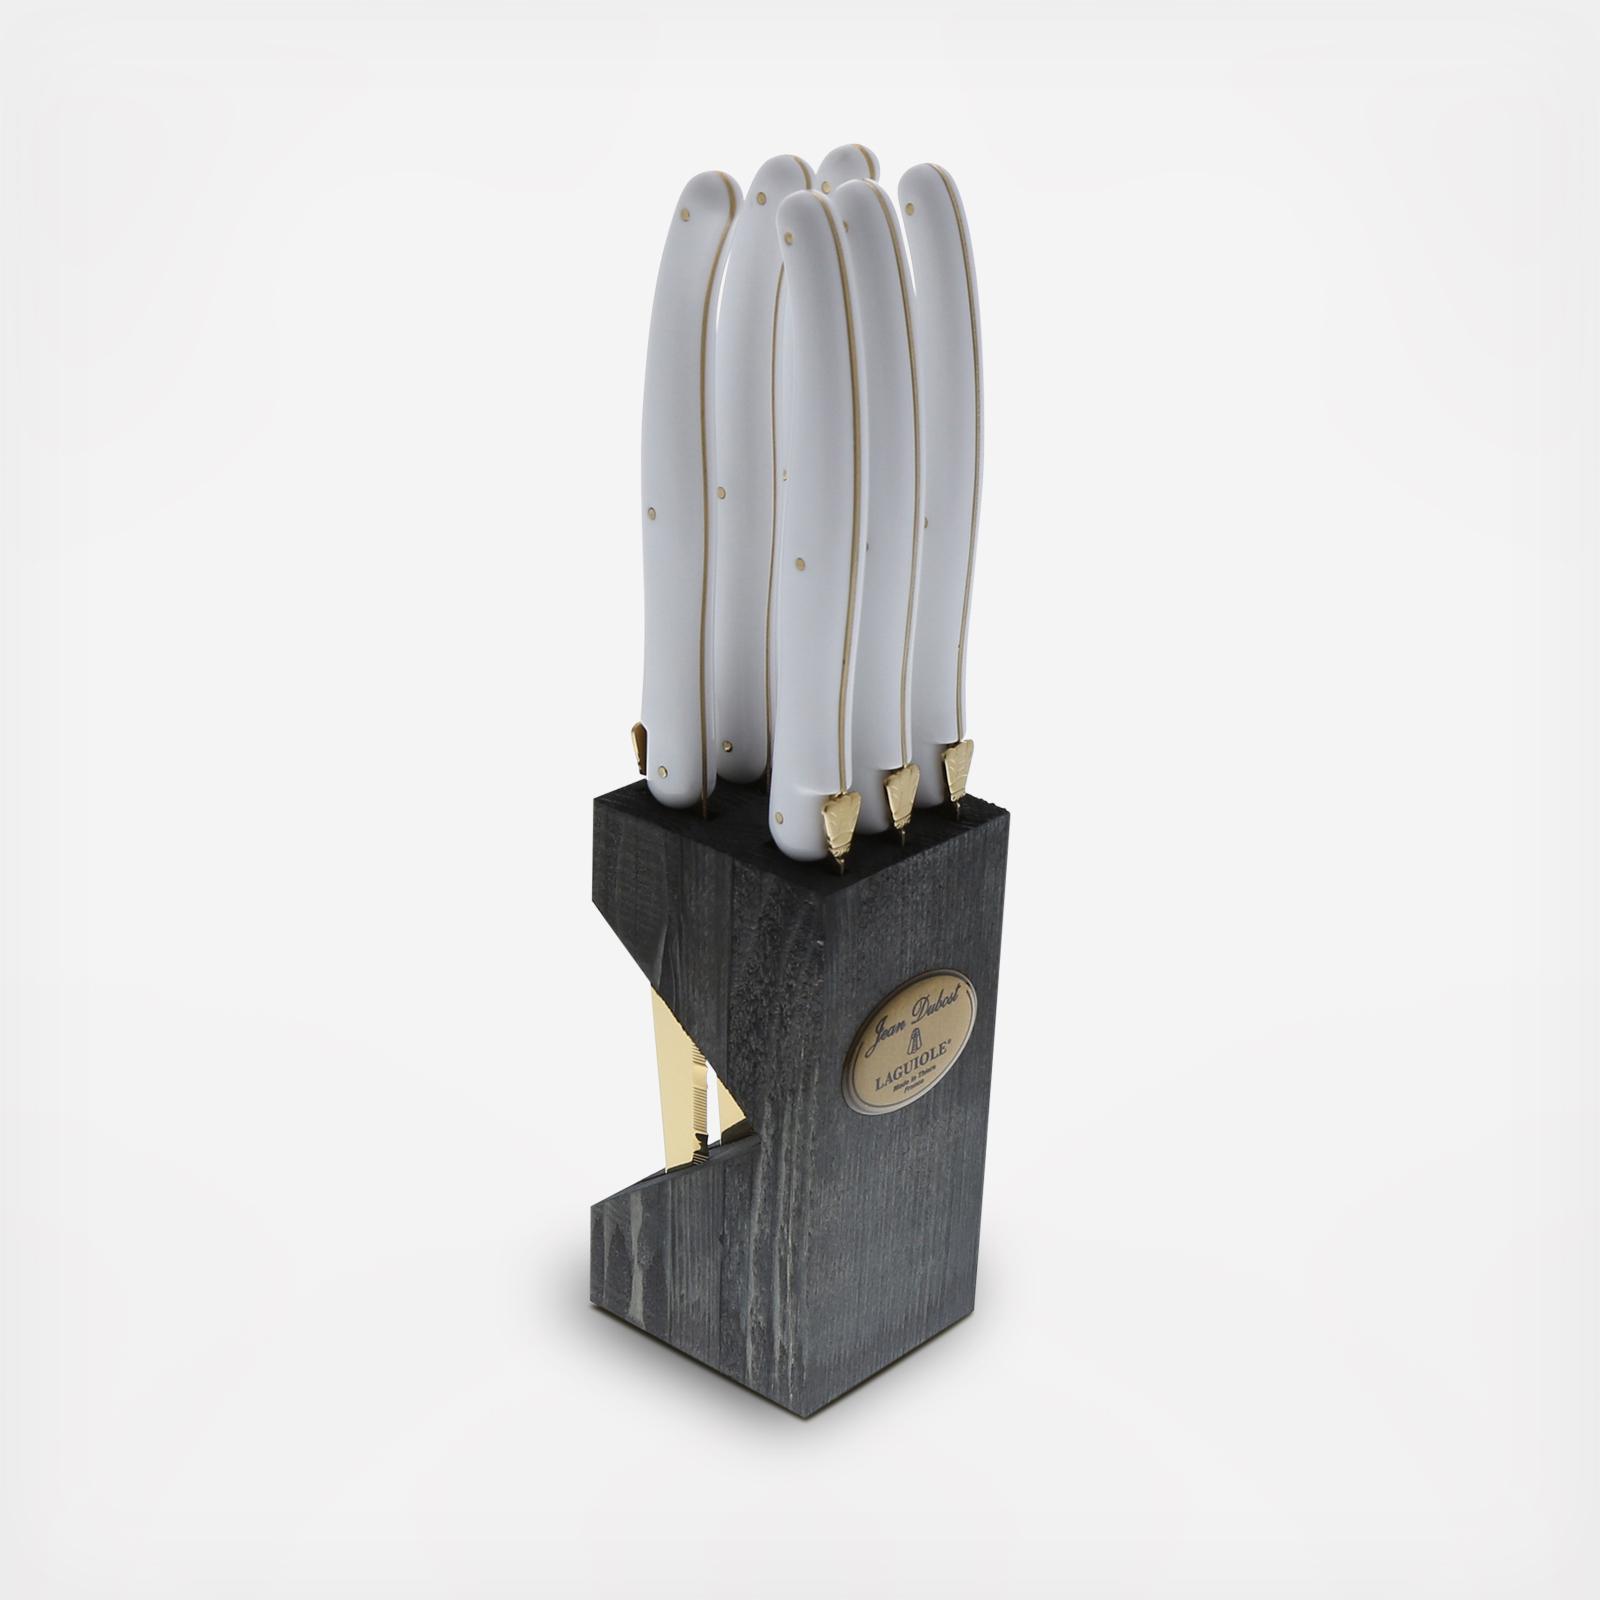 Jean Dubost 6 Stainless Steel Steak Knives in A Wooden Block